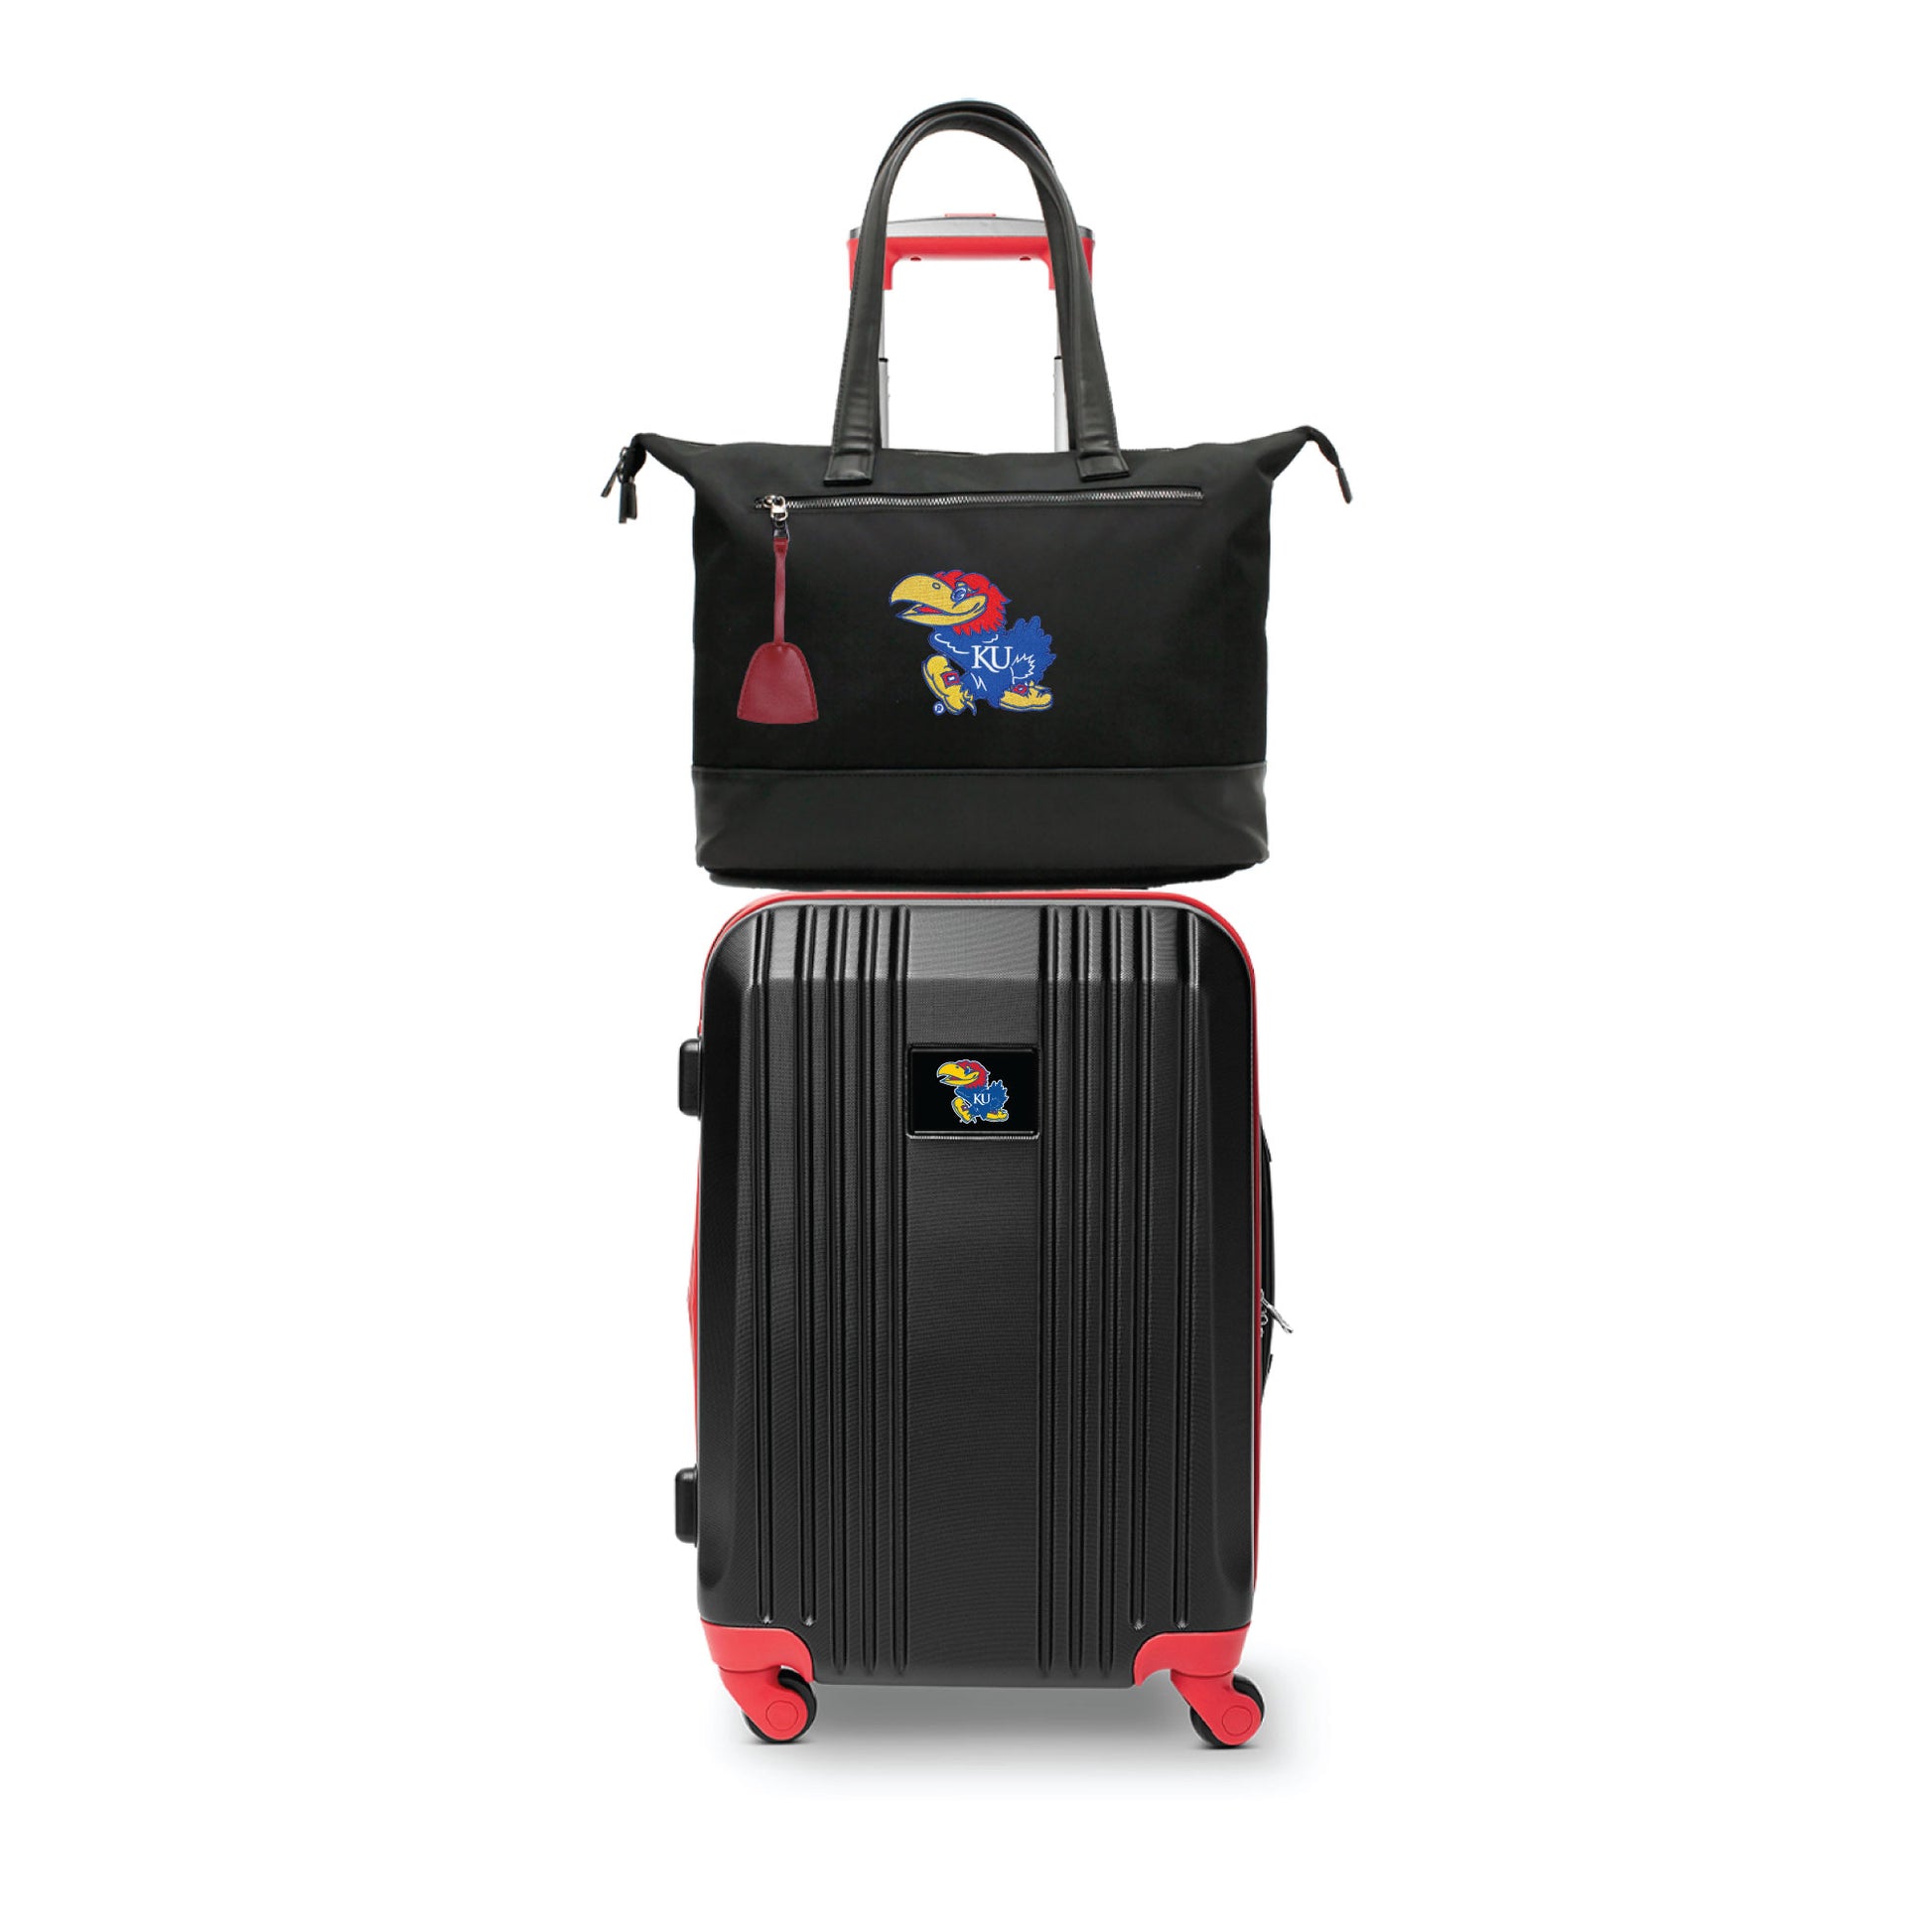 Kansas Jayhawks Premium Laptop Tote Bag and Luggage Set